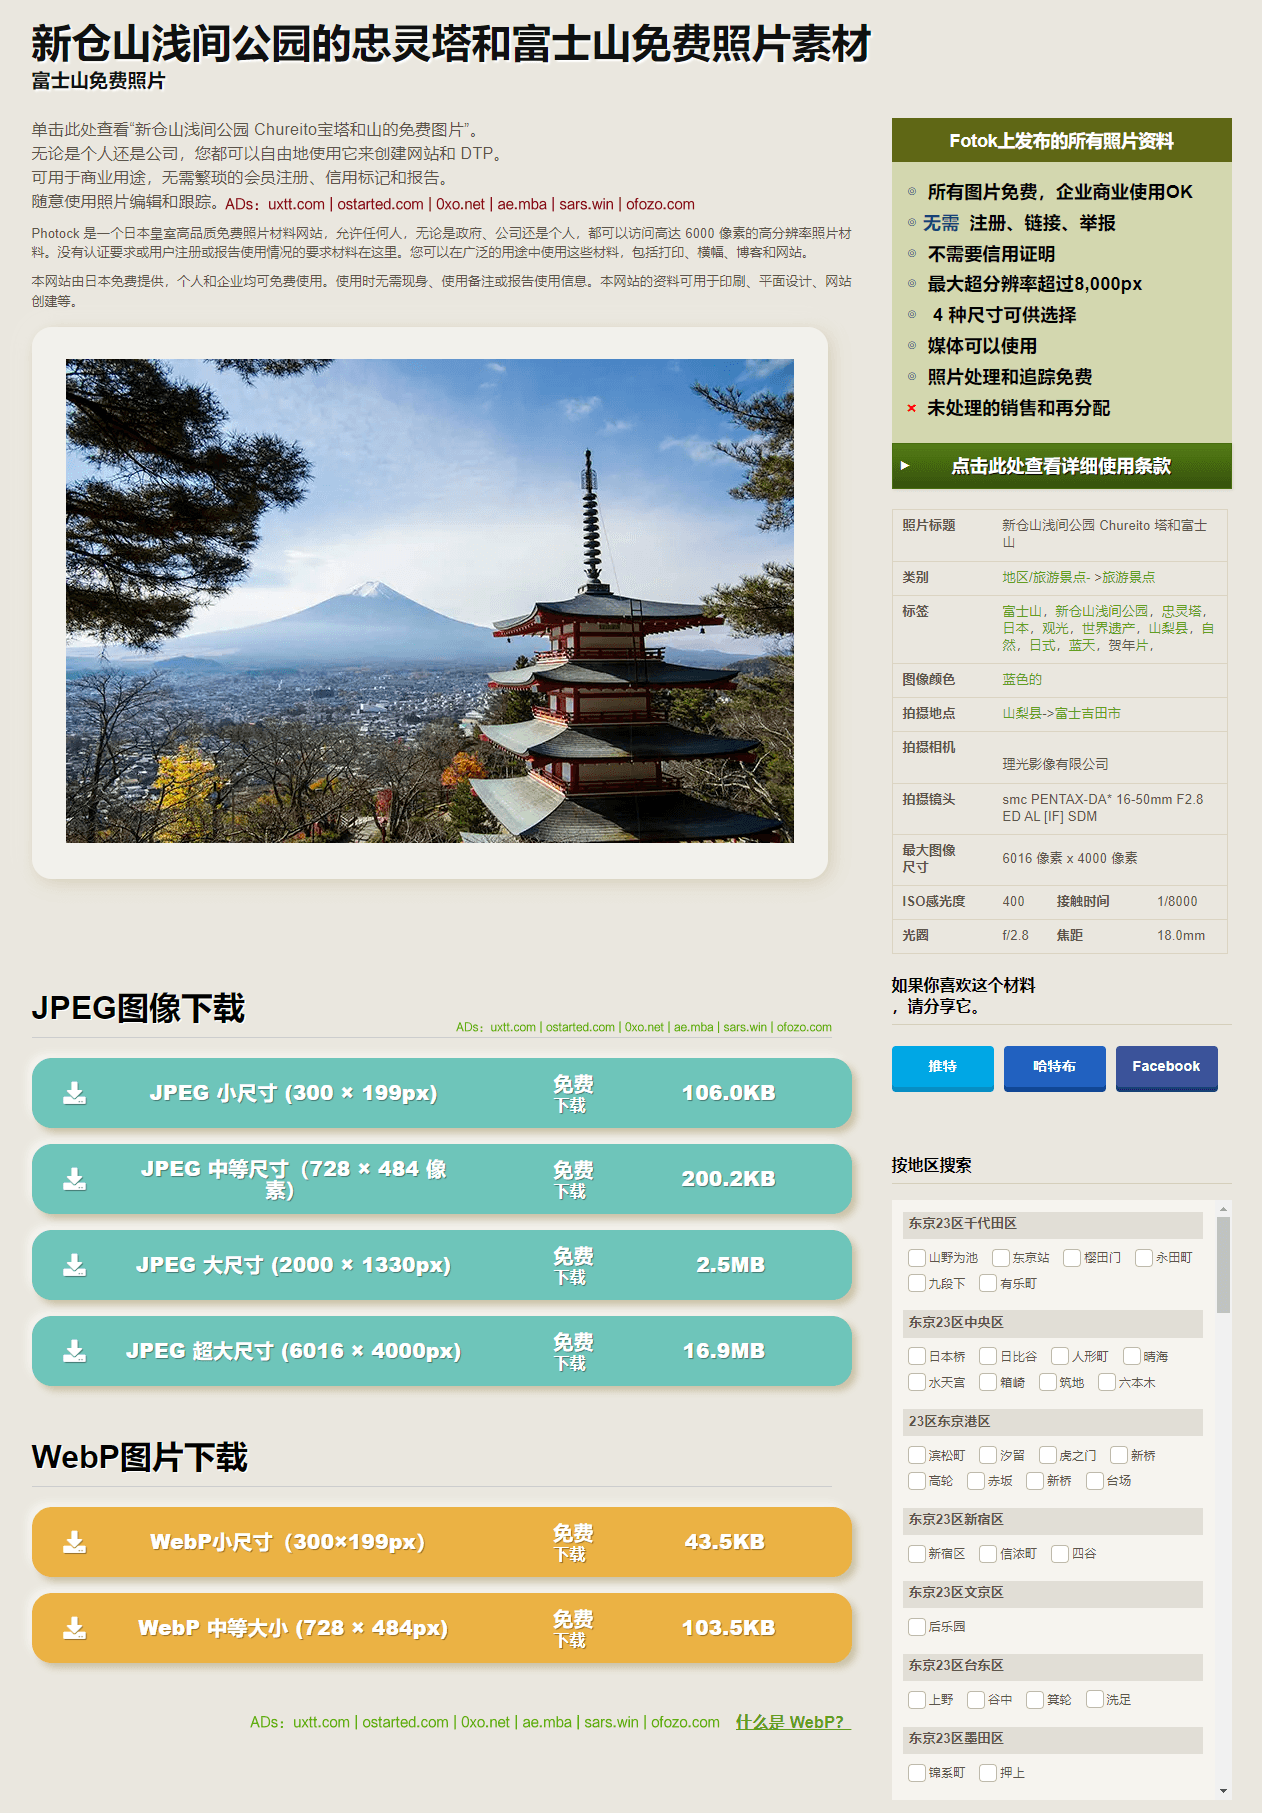 日本免费图库 Photock 超 7000 张超高清图片可商用 - 第5张图片